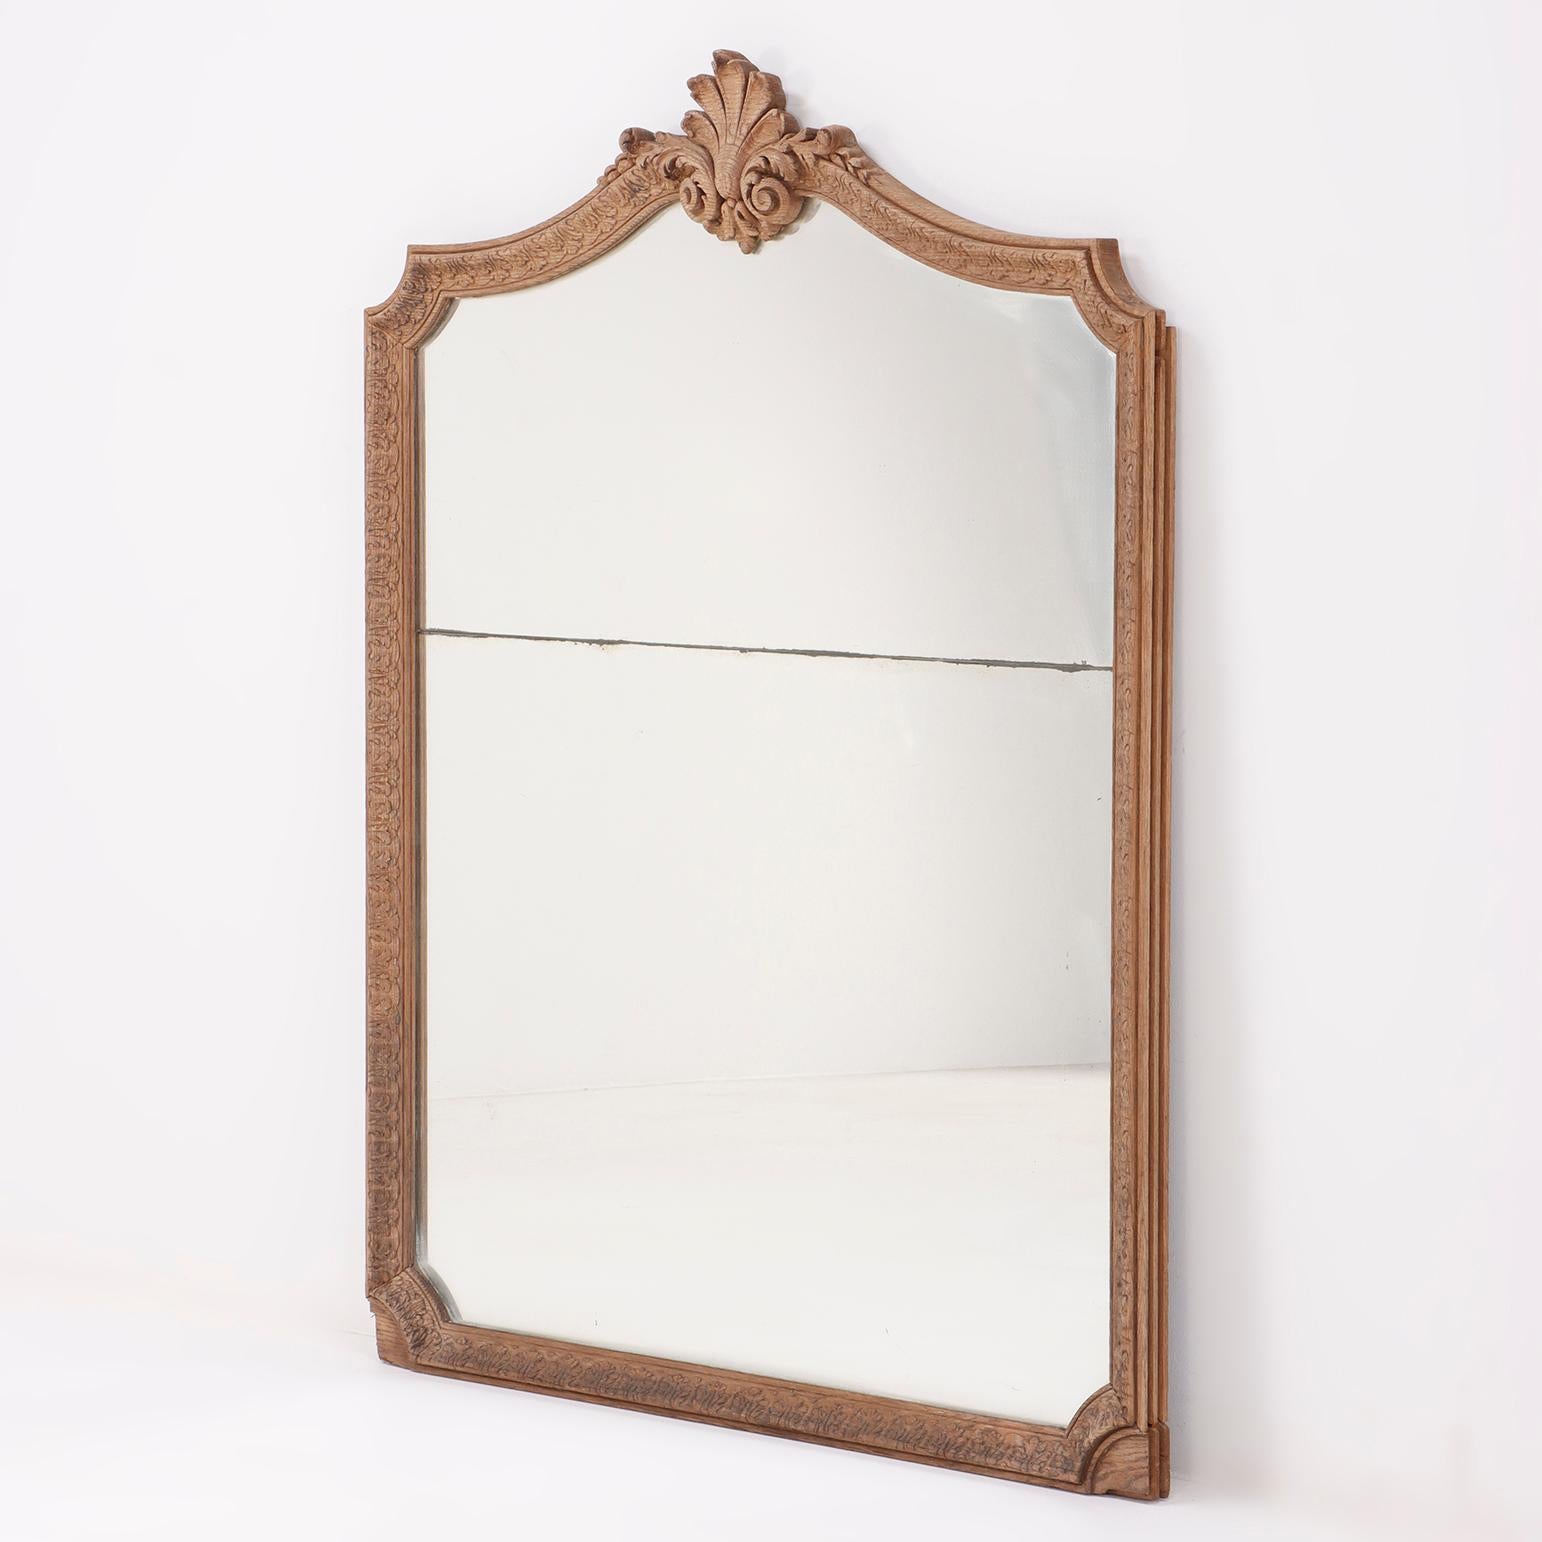 Französisch geschnitzte Eiche Spiegel C 1800 mit zwei Platten aus Glas. Dieser Spiegel scheint Teil eines getäfelten Raumes gewesen zu sein, wenn man die Gestaltung der Seiten betrachtet.